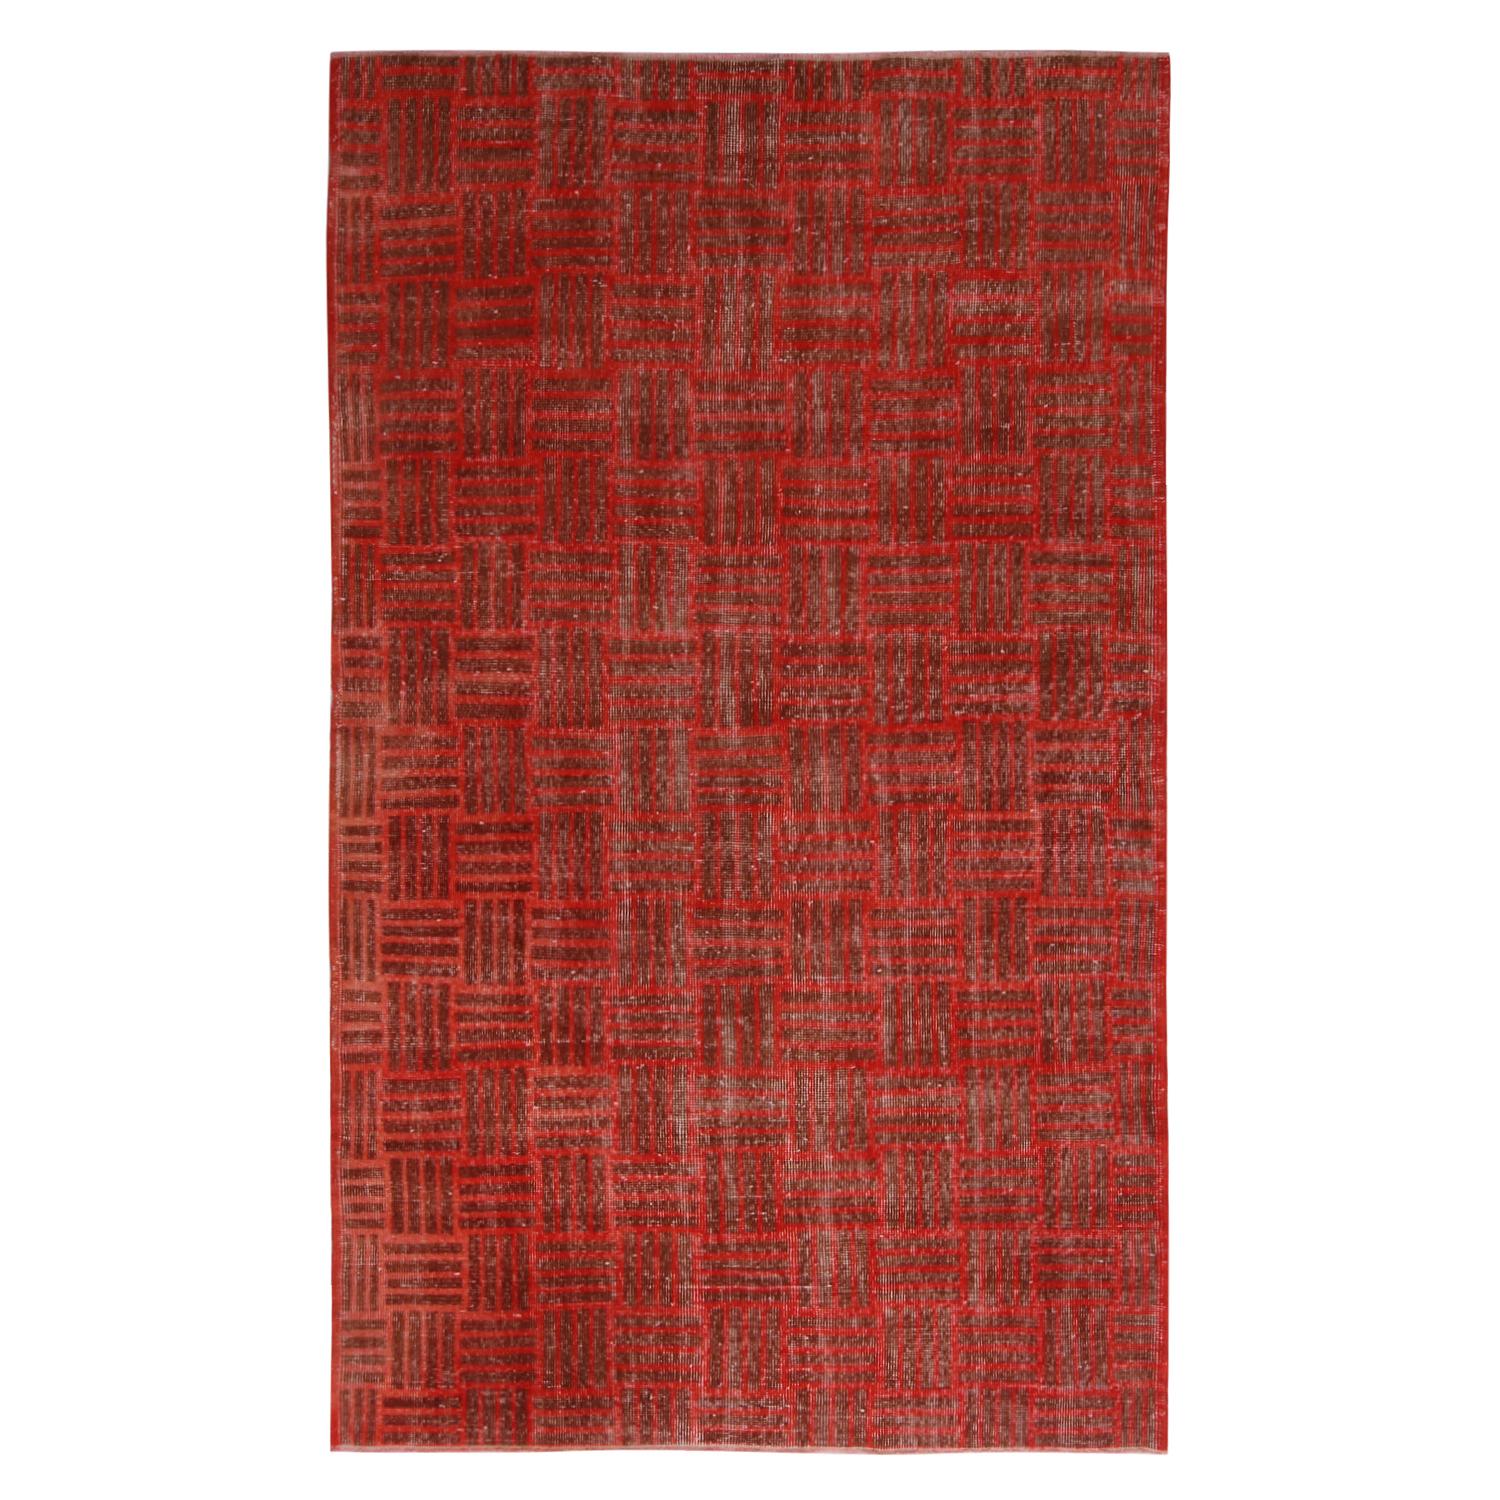 Vintage Midcentury Red and Brown Geometric Wool Rug